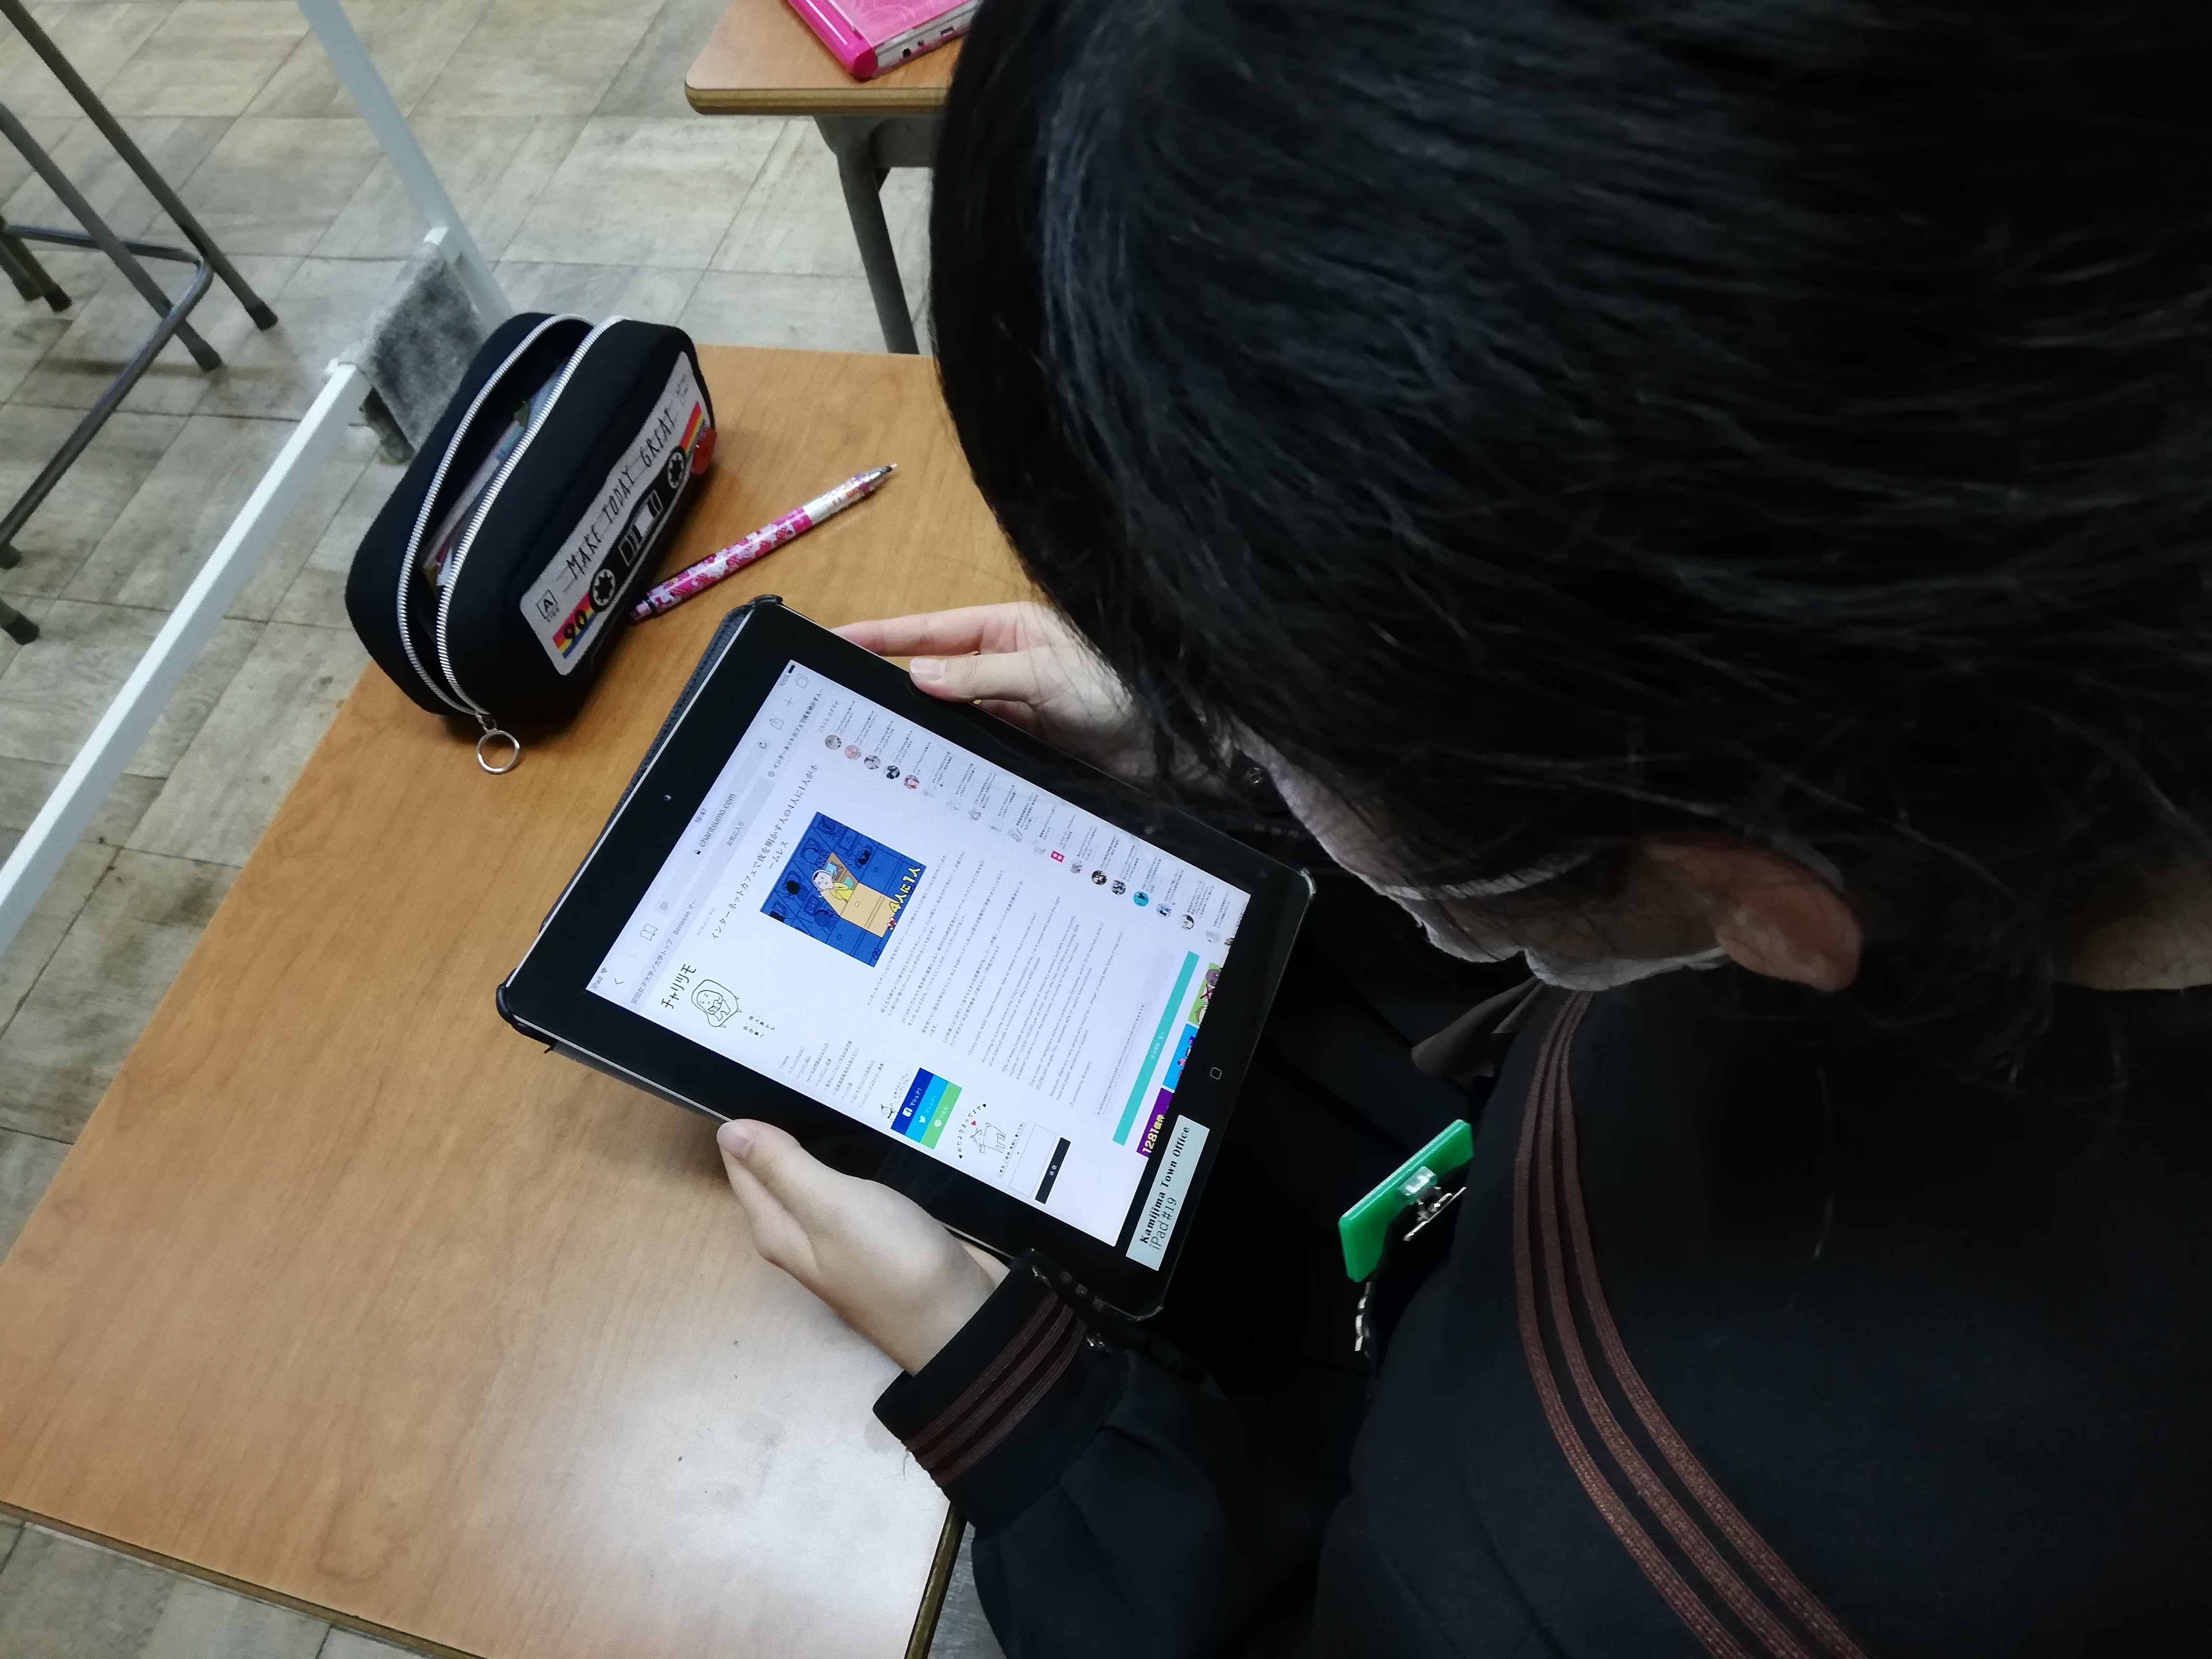 iPadを使って、調べ学習をする弓削高校の生徒